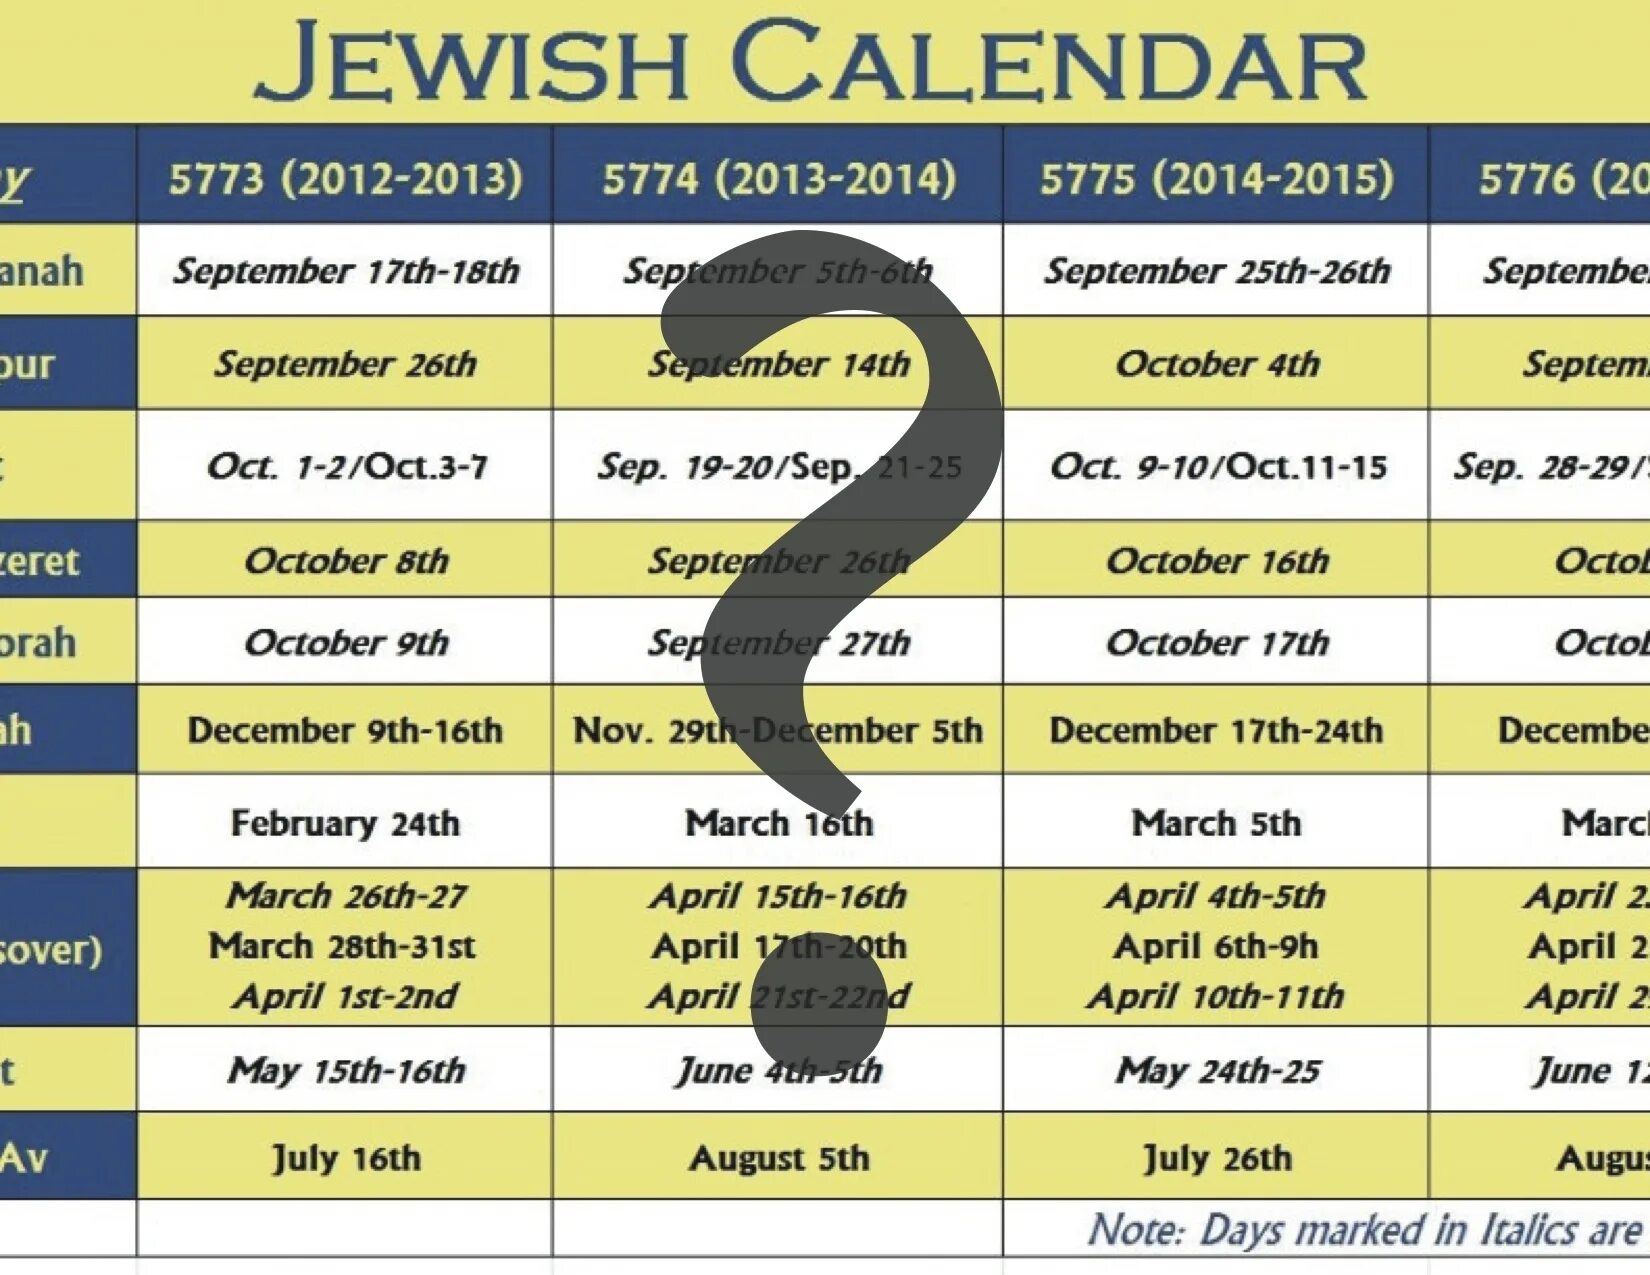 Hebrew Calendar. Еврейский календарь. Первый месяц еврейского календаря. Месяца на иврите.